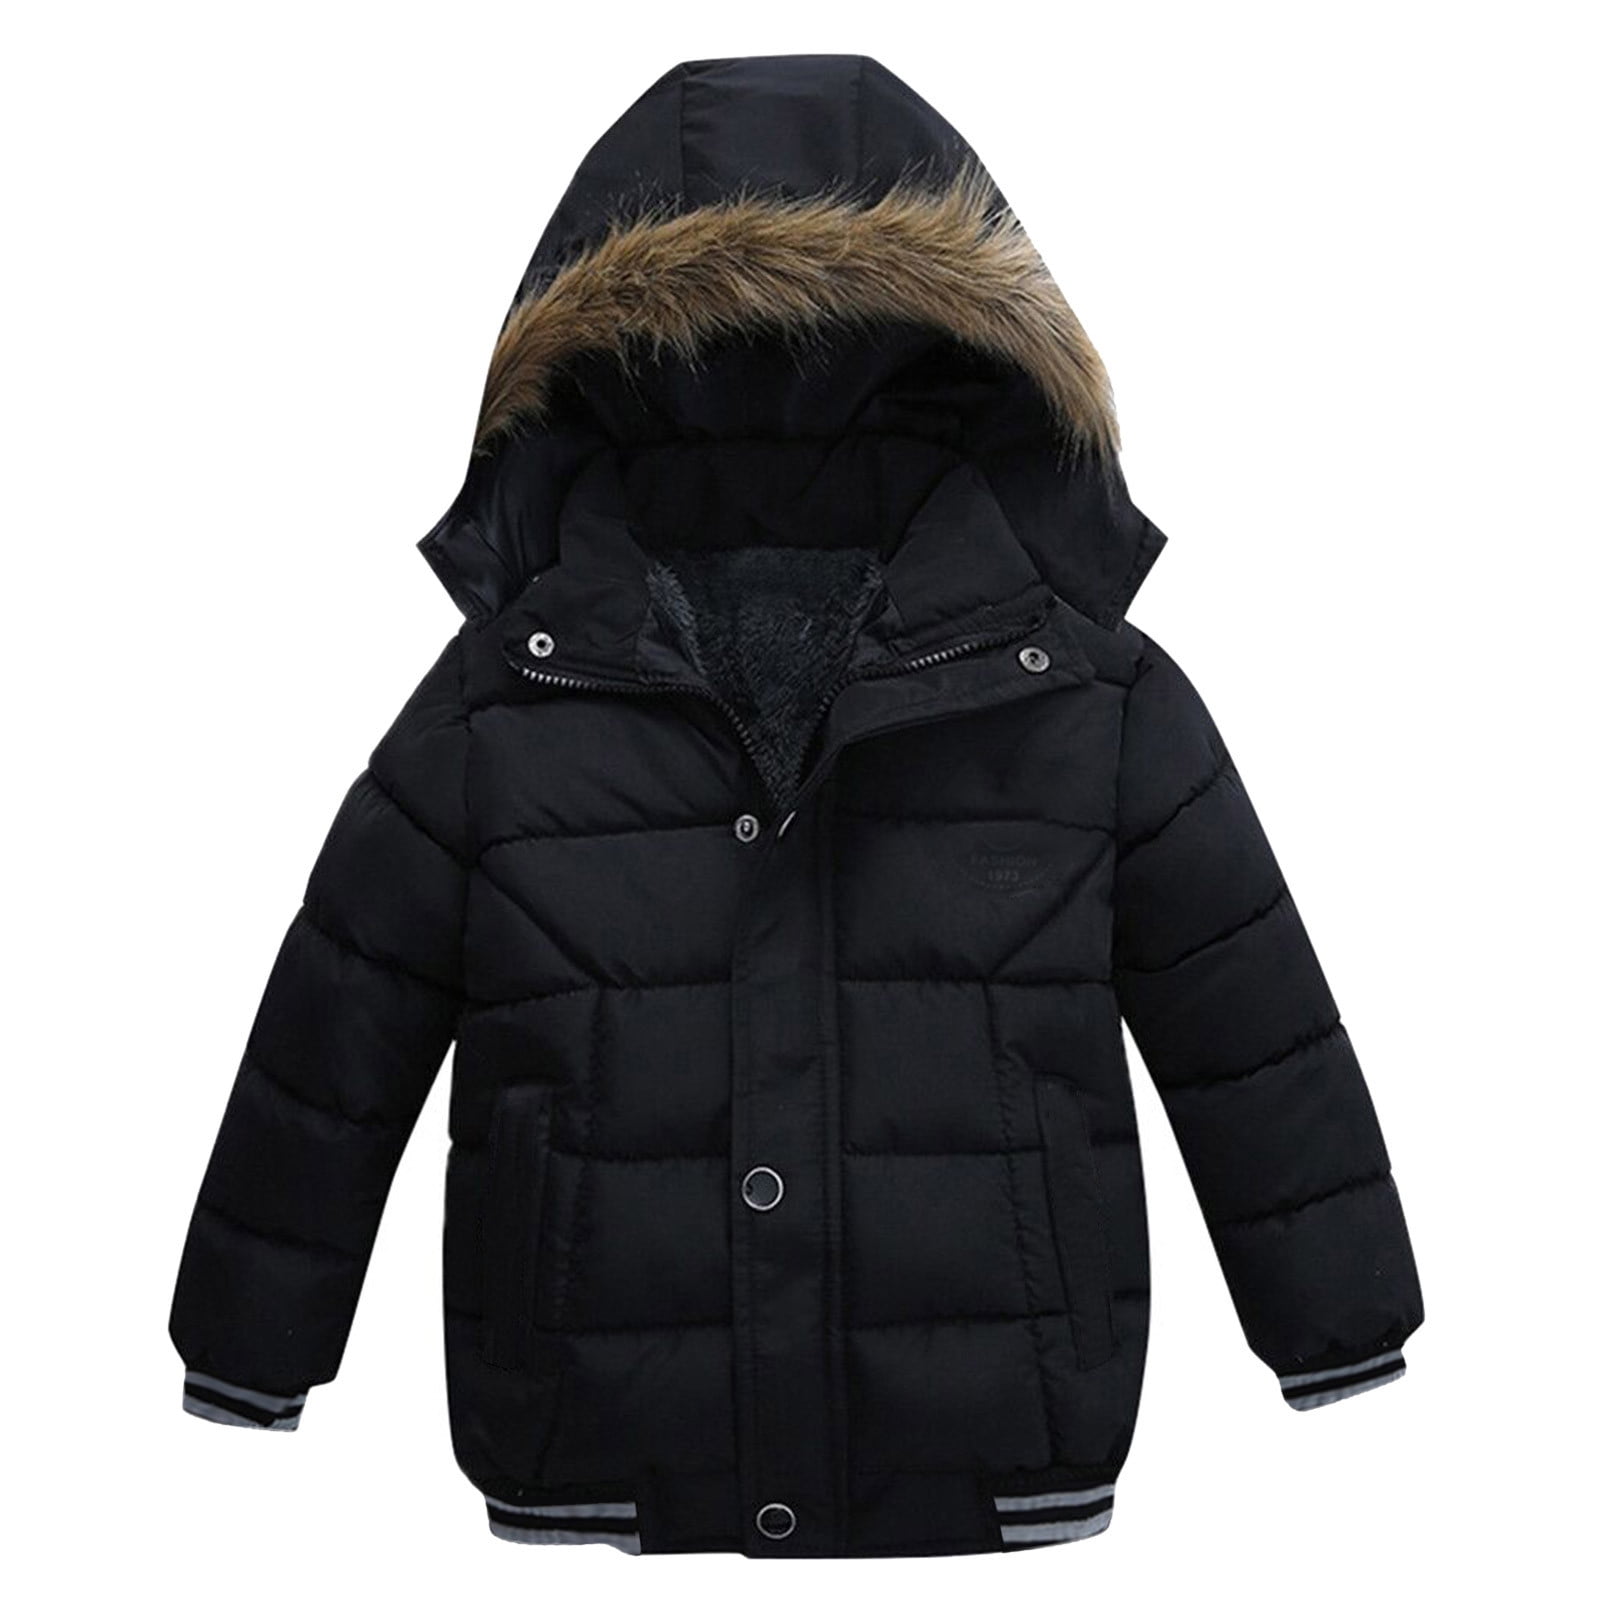 Buy Boys Black Patterned Regular Fit Jacket Online - 790632 | Allen Solly-anthinhphatland.vn